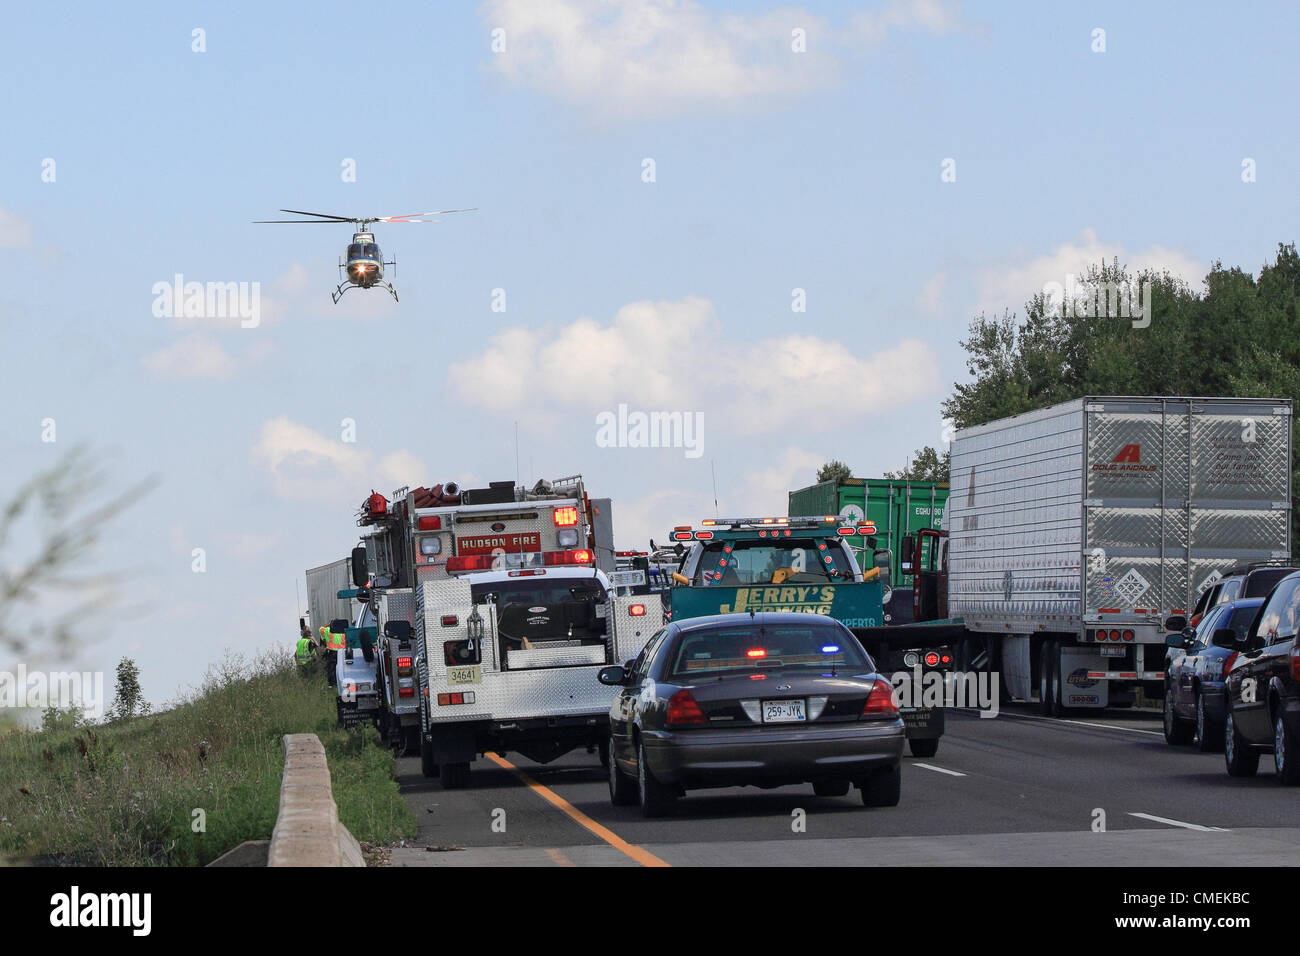 Lunes, 30 de julio, 2012 -- un helicóptero LifeFlight transporta a una víctima de la escena de un accidente mortal en la Interestatal 94 en Hudson, Wisconsin, Estados Unidos. El accidente ocurrió aproximadamente a la 1:30 de la tarde del lunes cuando un vehículo utilitario deportivo con seis pasajeros se estrelló en la parte trasera de una plataforma semi-remolque. Al menos una persona murió en el accidente. Foto de stock